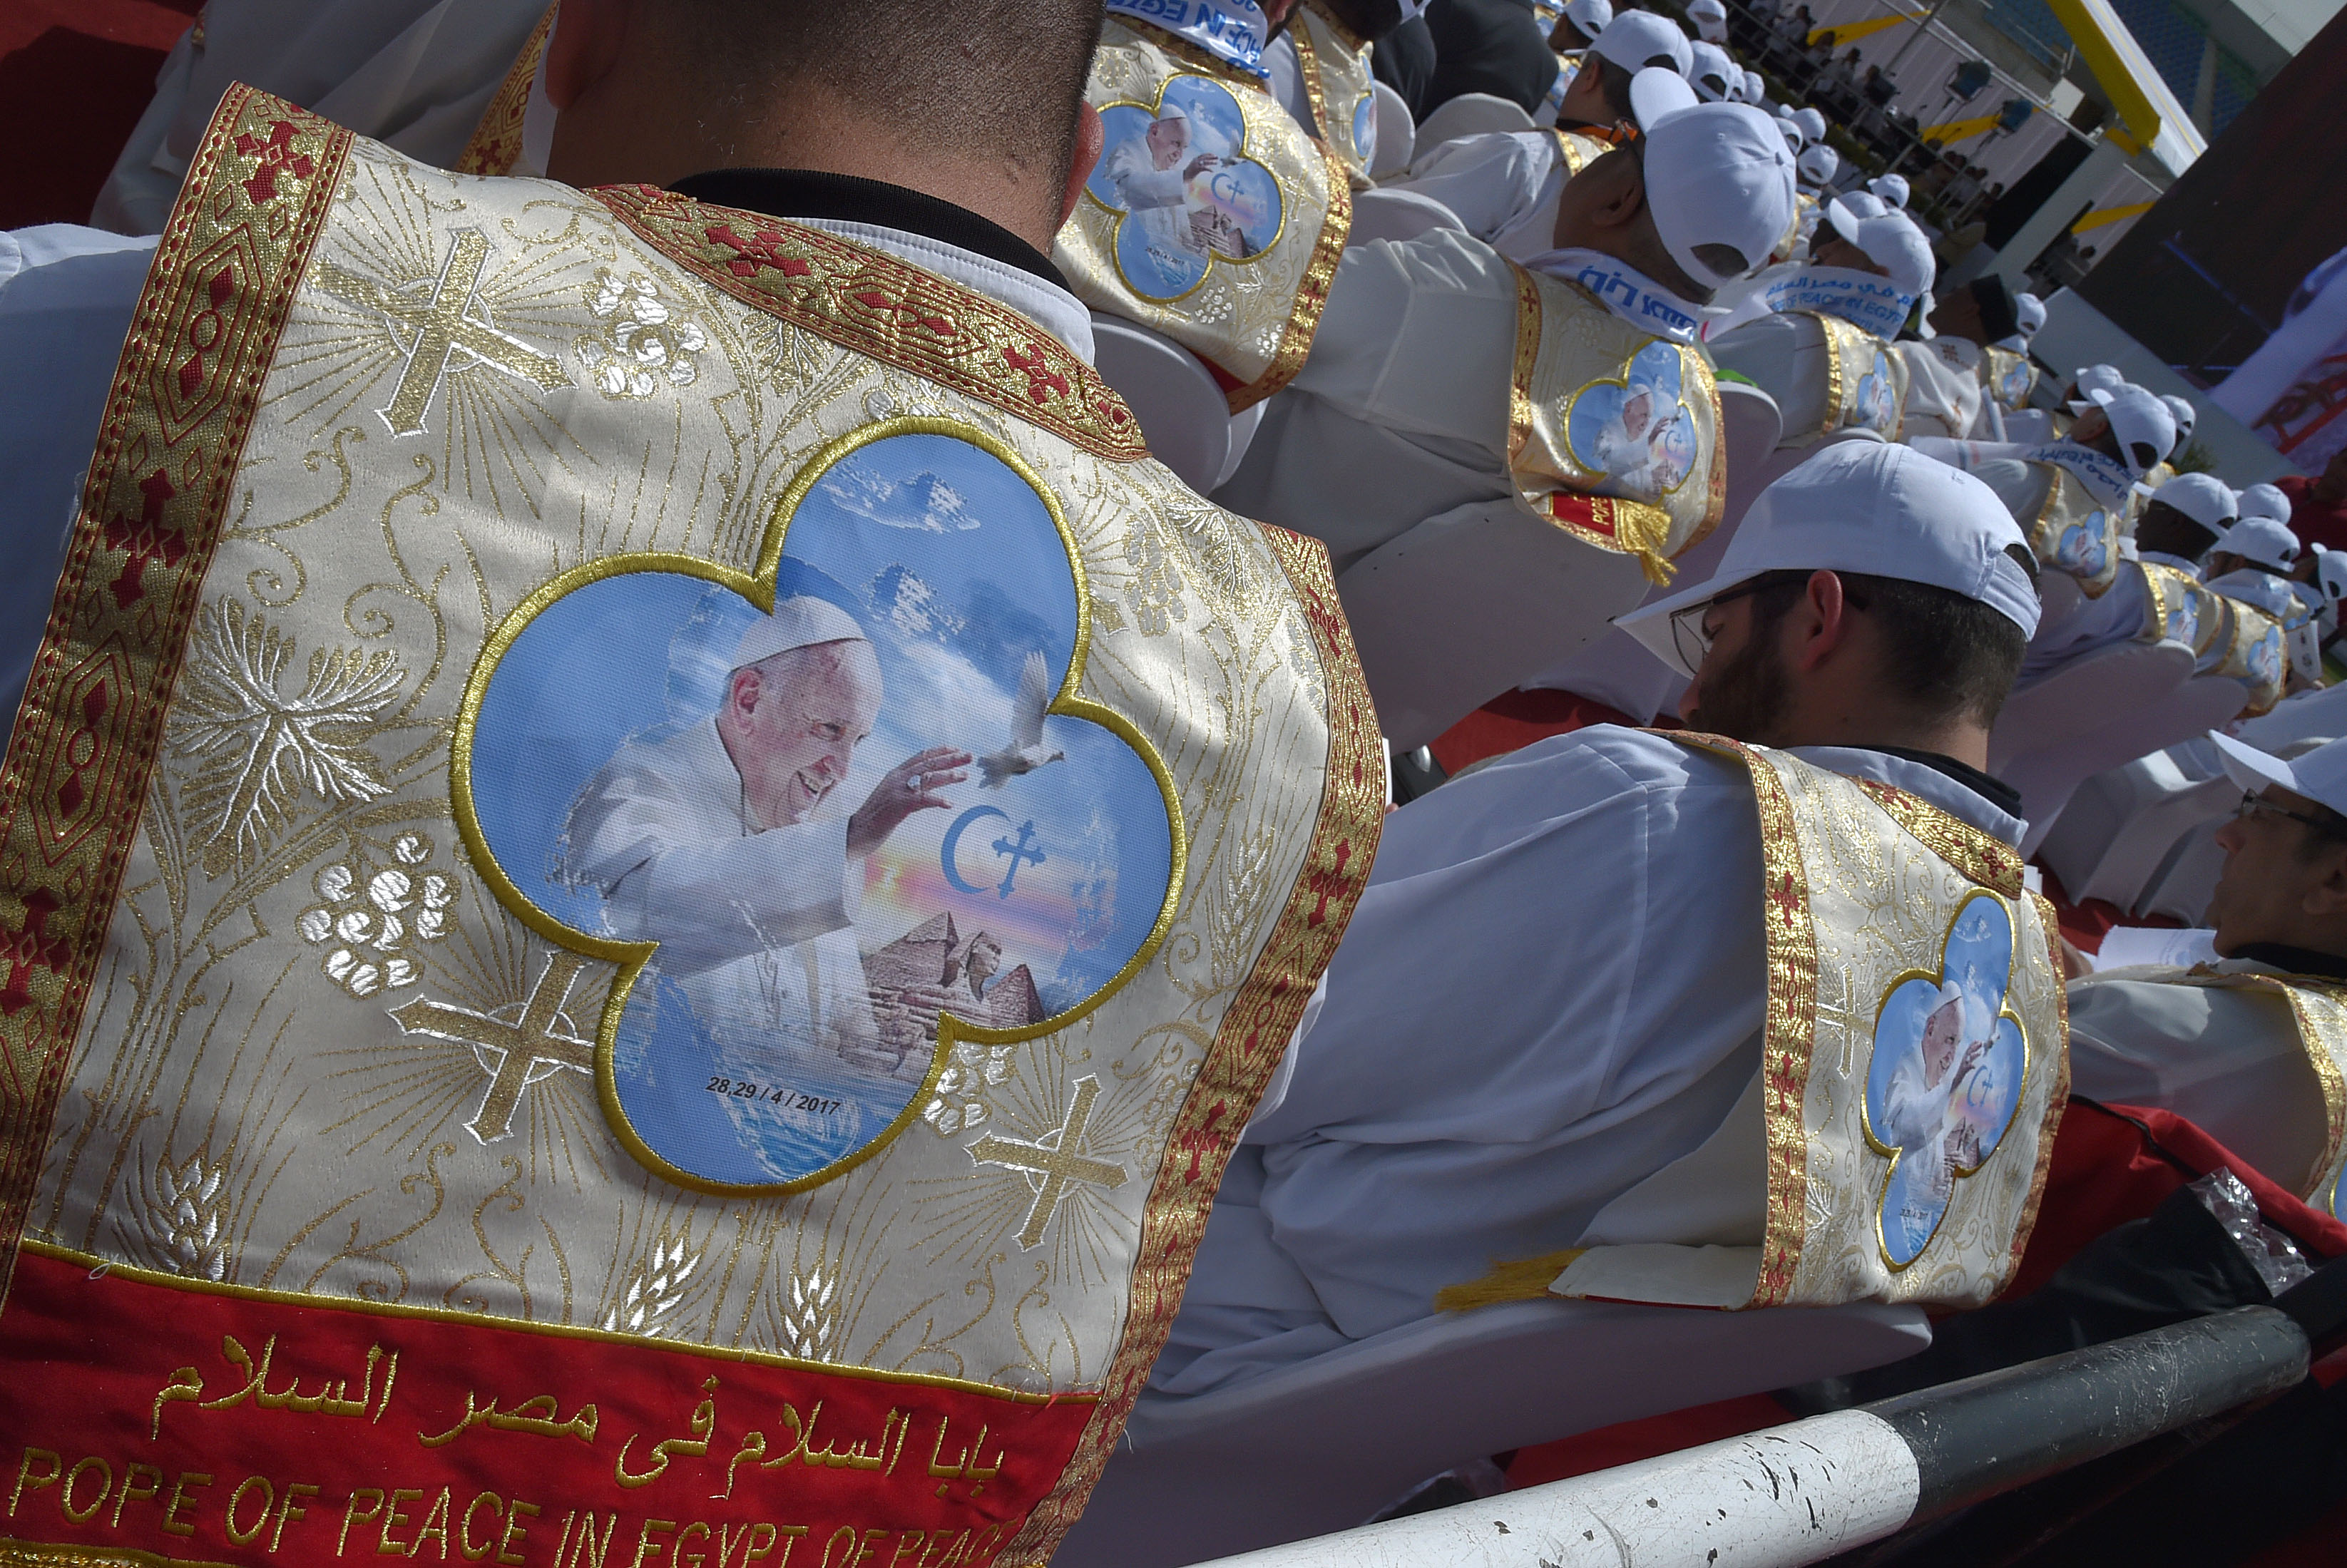 المصلون المصريون يؤدون الصلاة خلف بابا الفاتيكان